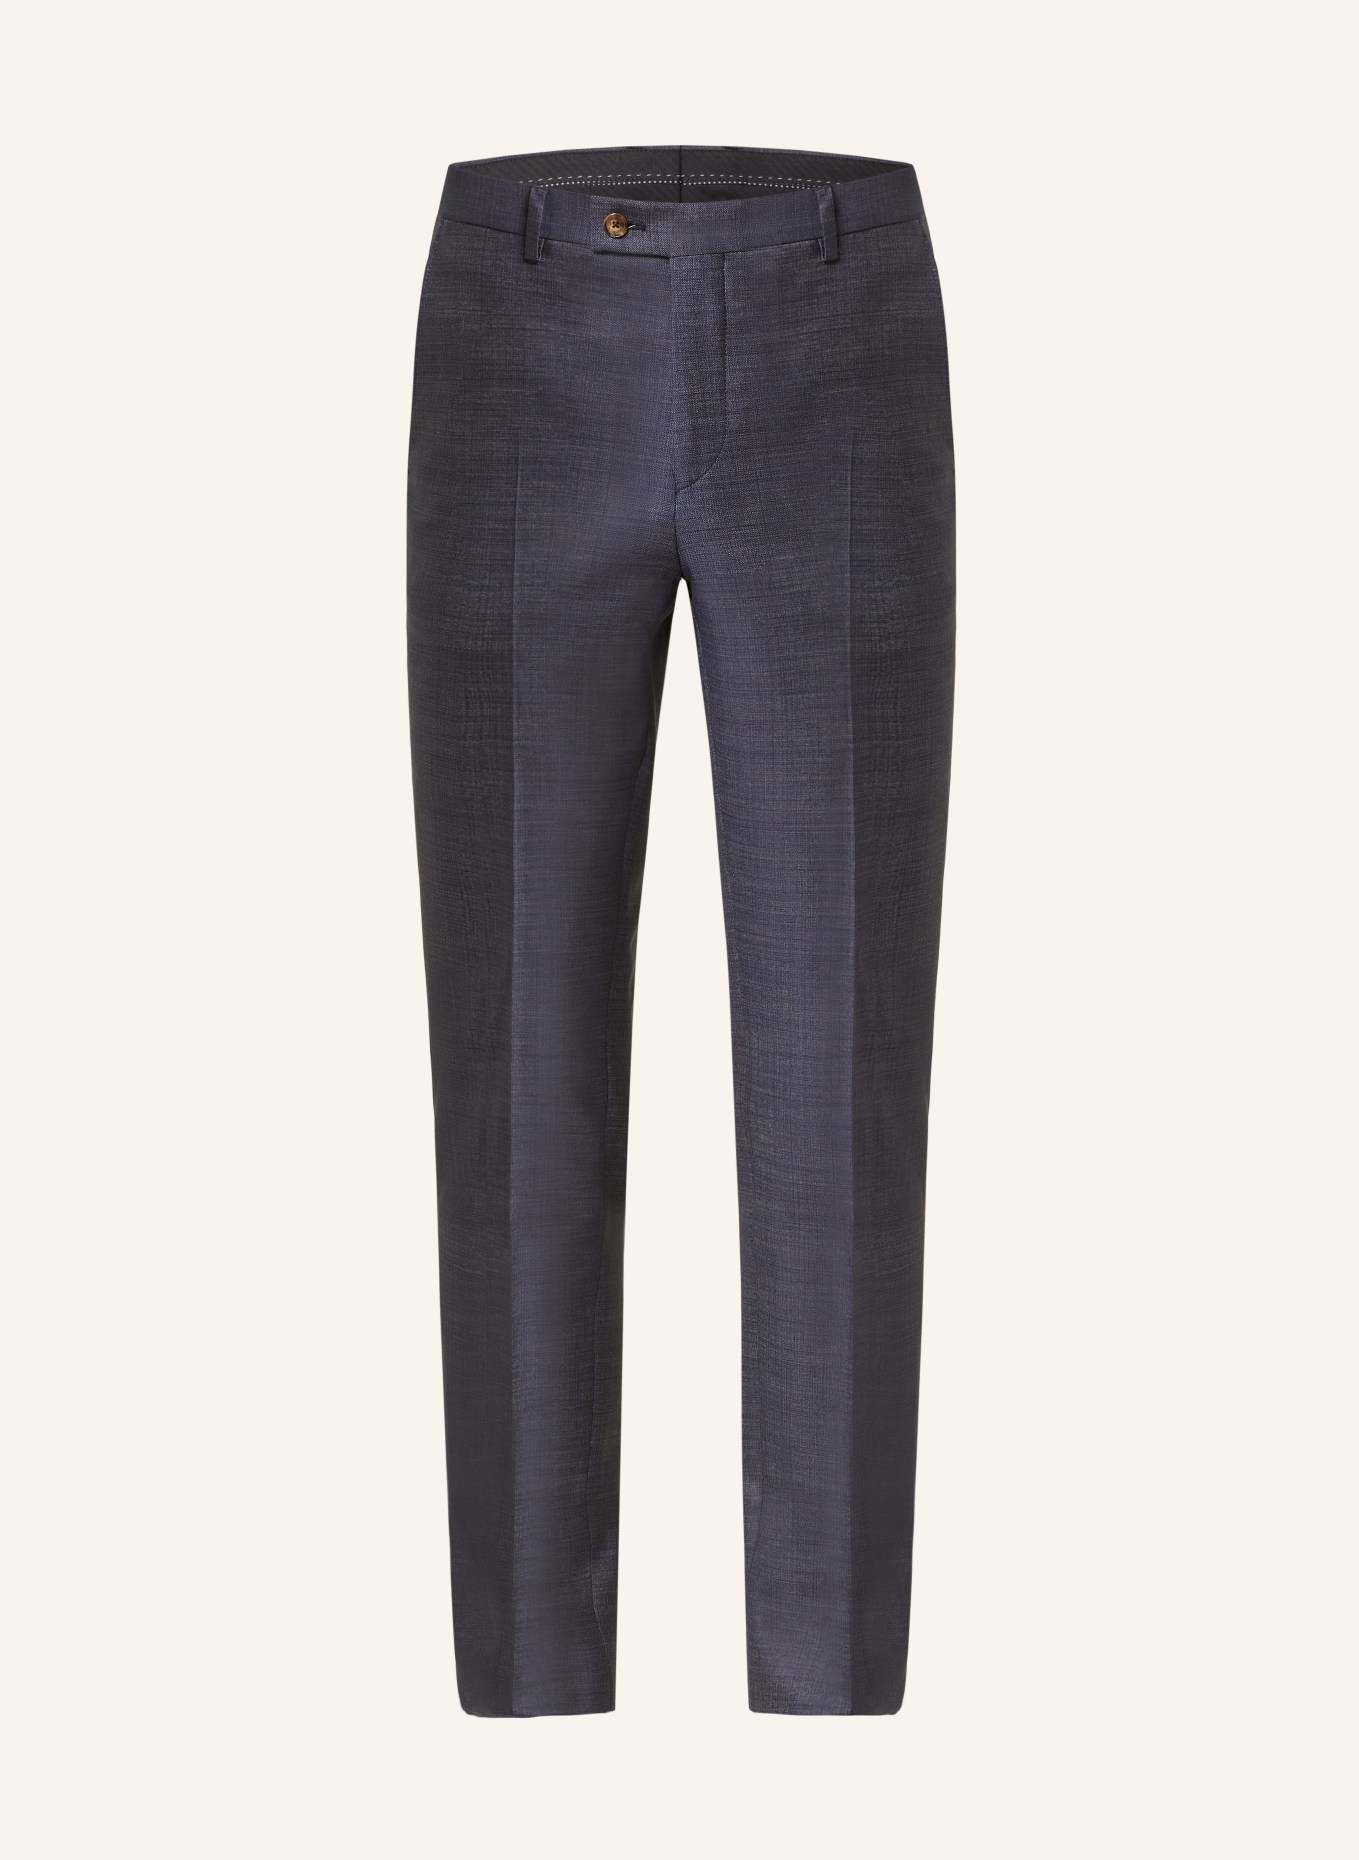 SAND COPENHAGEN Anzughose Slim Fit, Farbe: 570 NAVY (Bild 1)